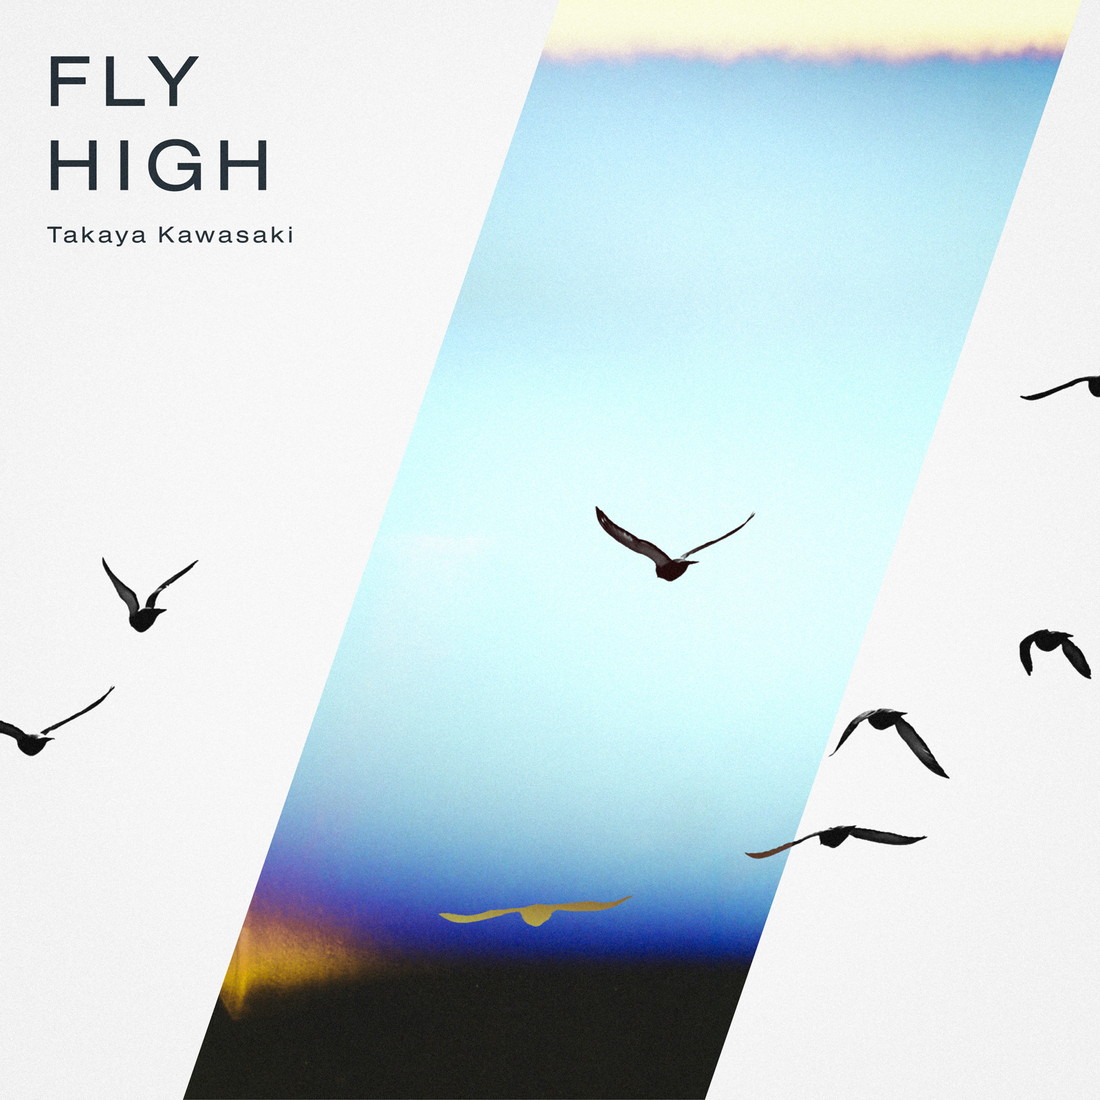 川崎鷹也、梅雨空を吹き飛ばす爽快感あふれる新曲「FLY HIGH」配信スタート